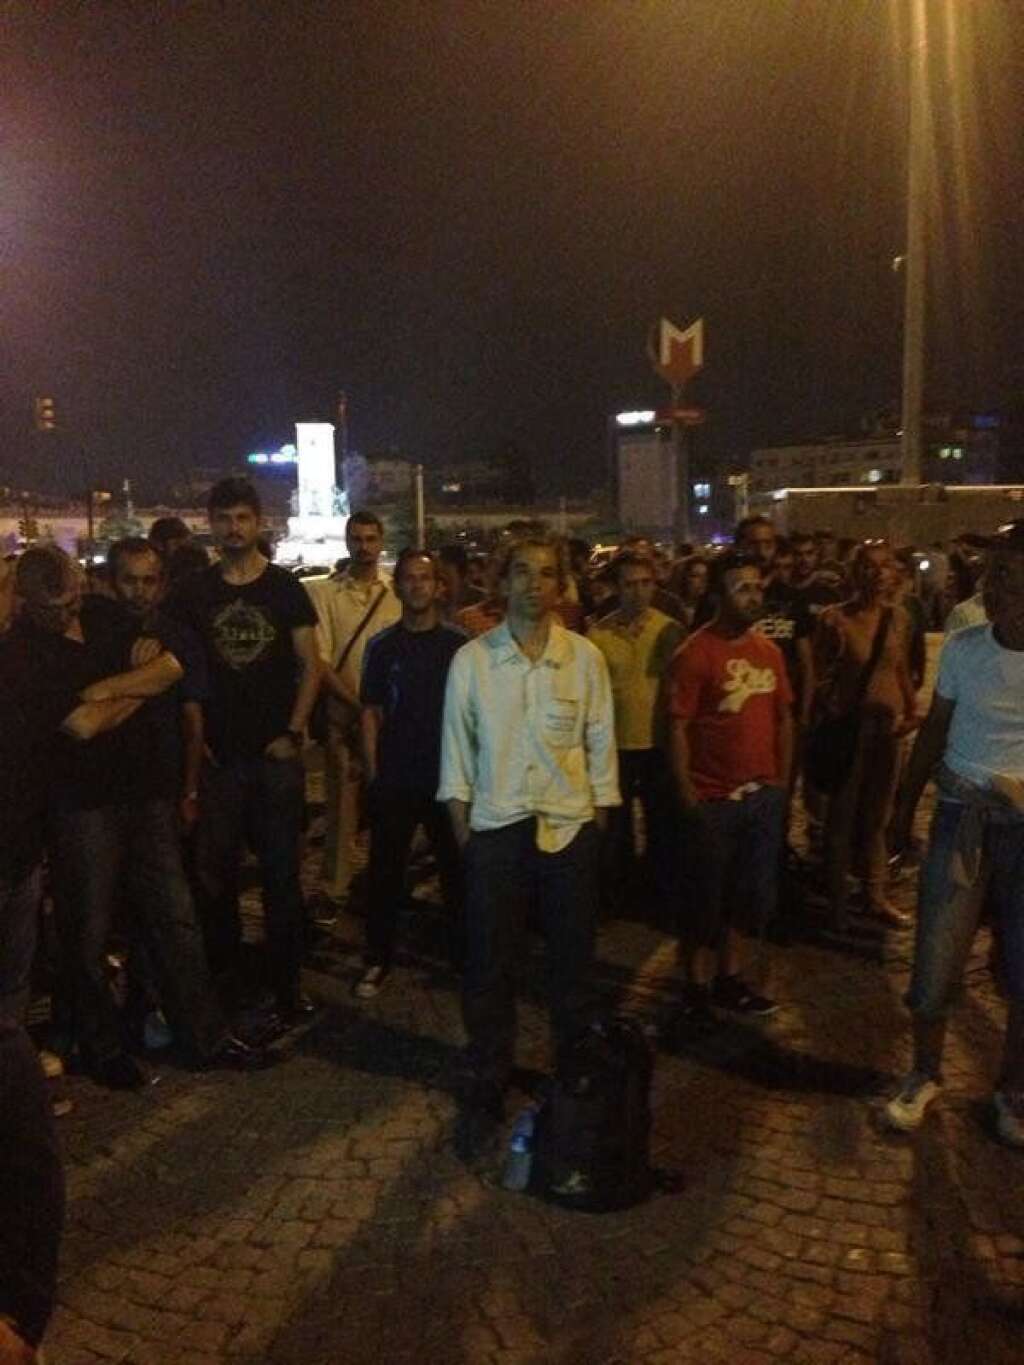 Duran Adam - Erdem Gündüz rejoint par d'autres manifestants sur la place Taksim à Istanbul le 17 juin 2013.